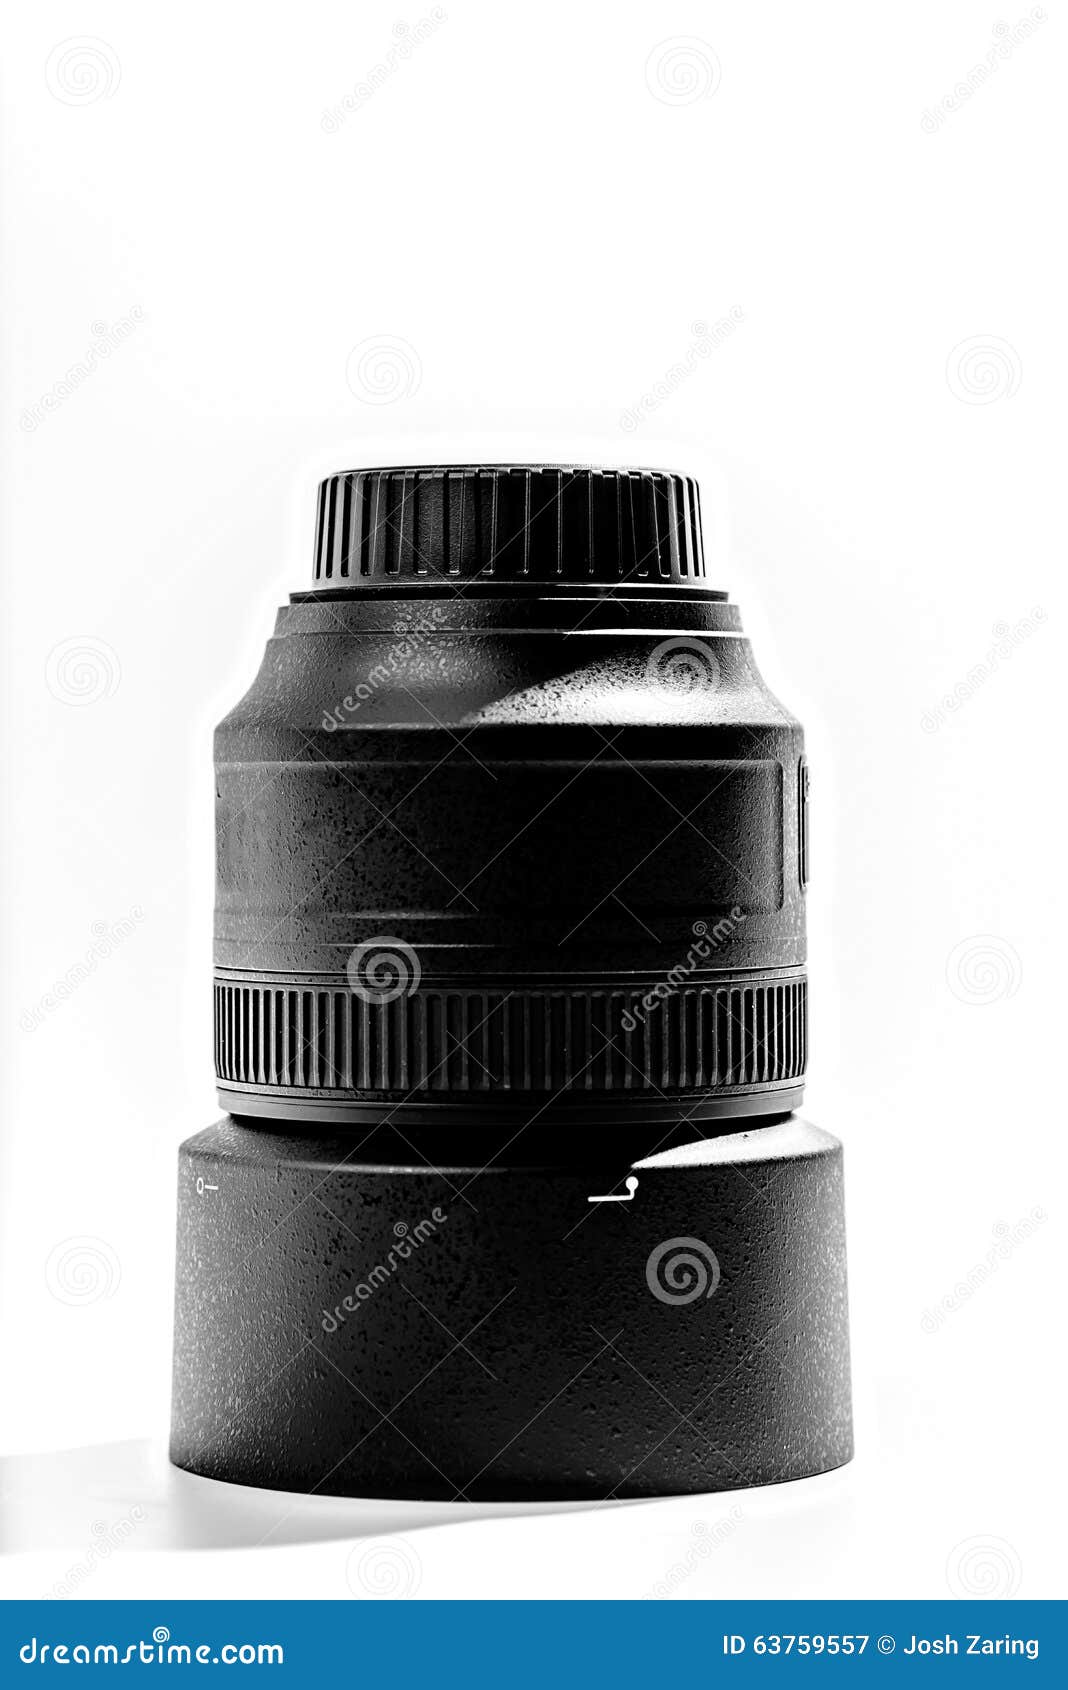 85mm portrait lens